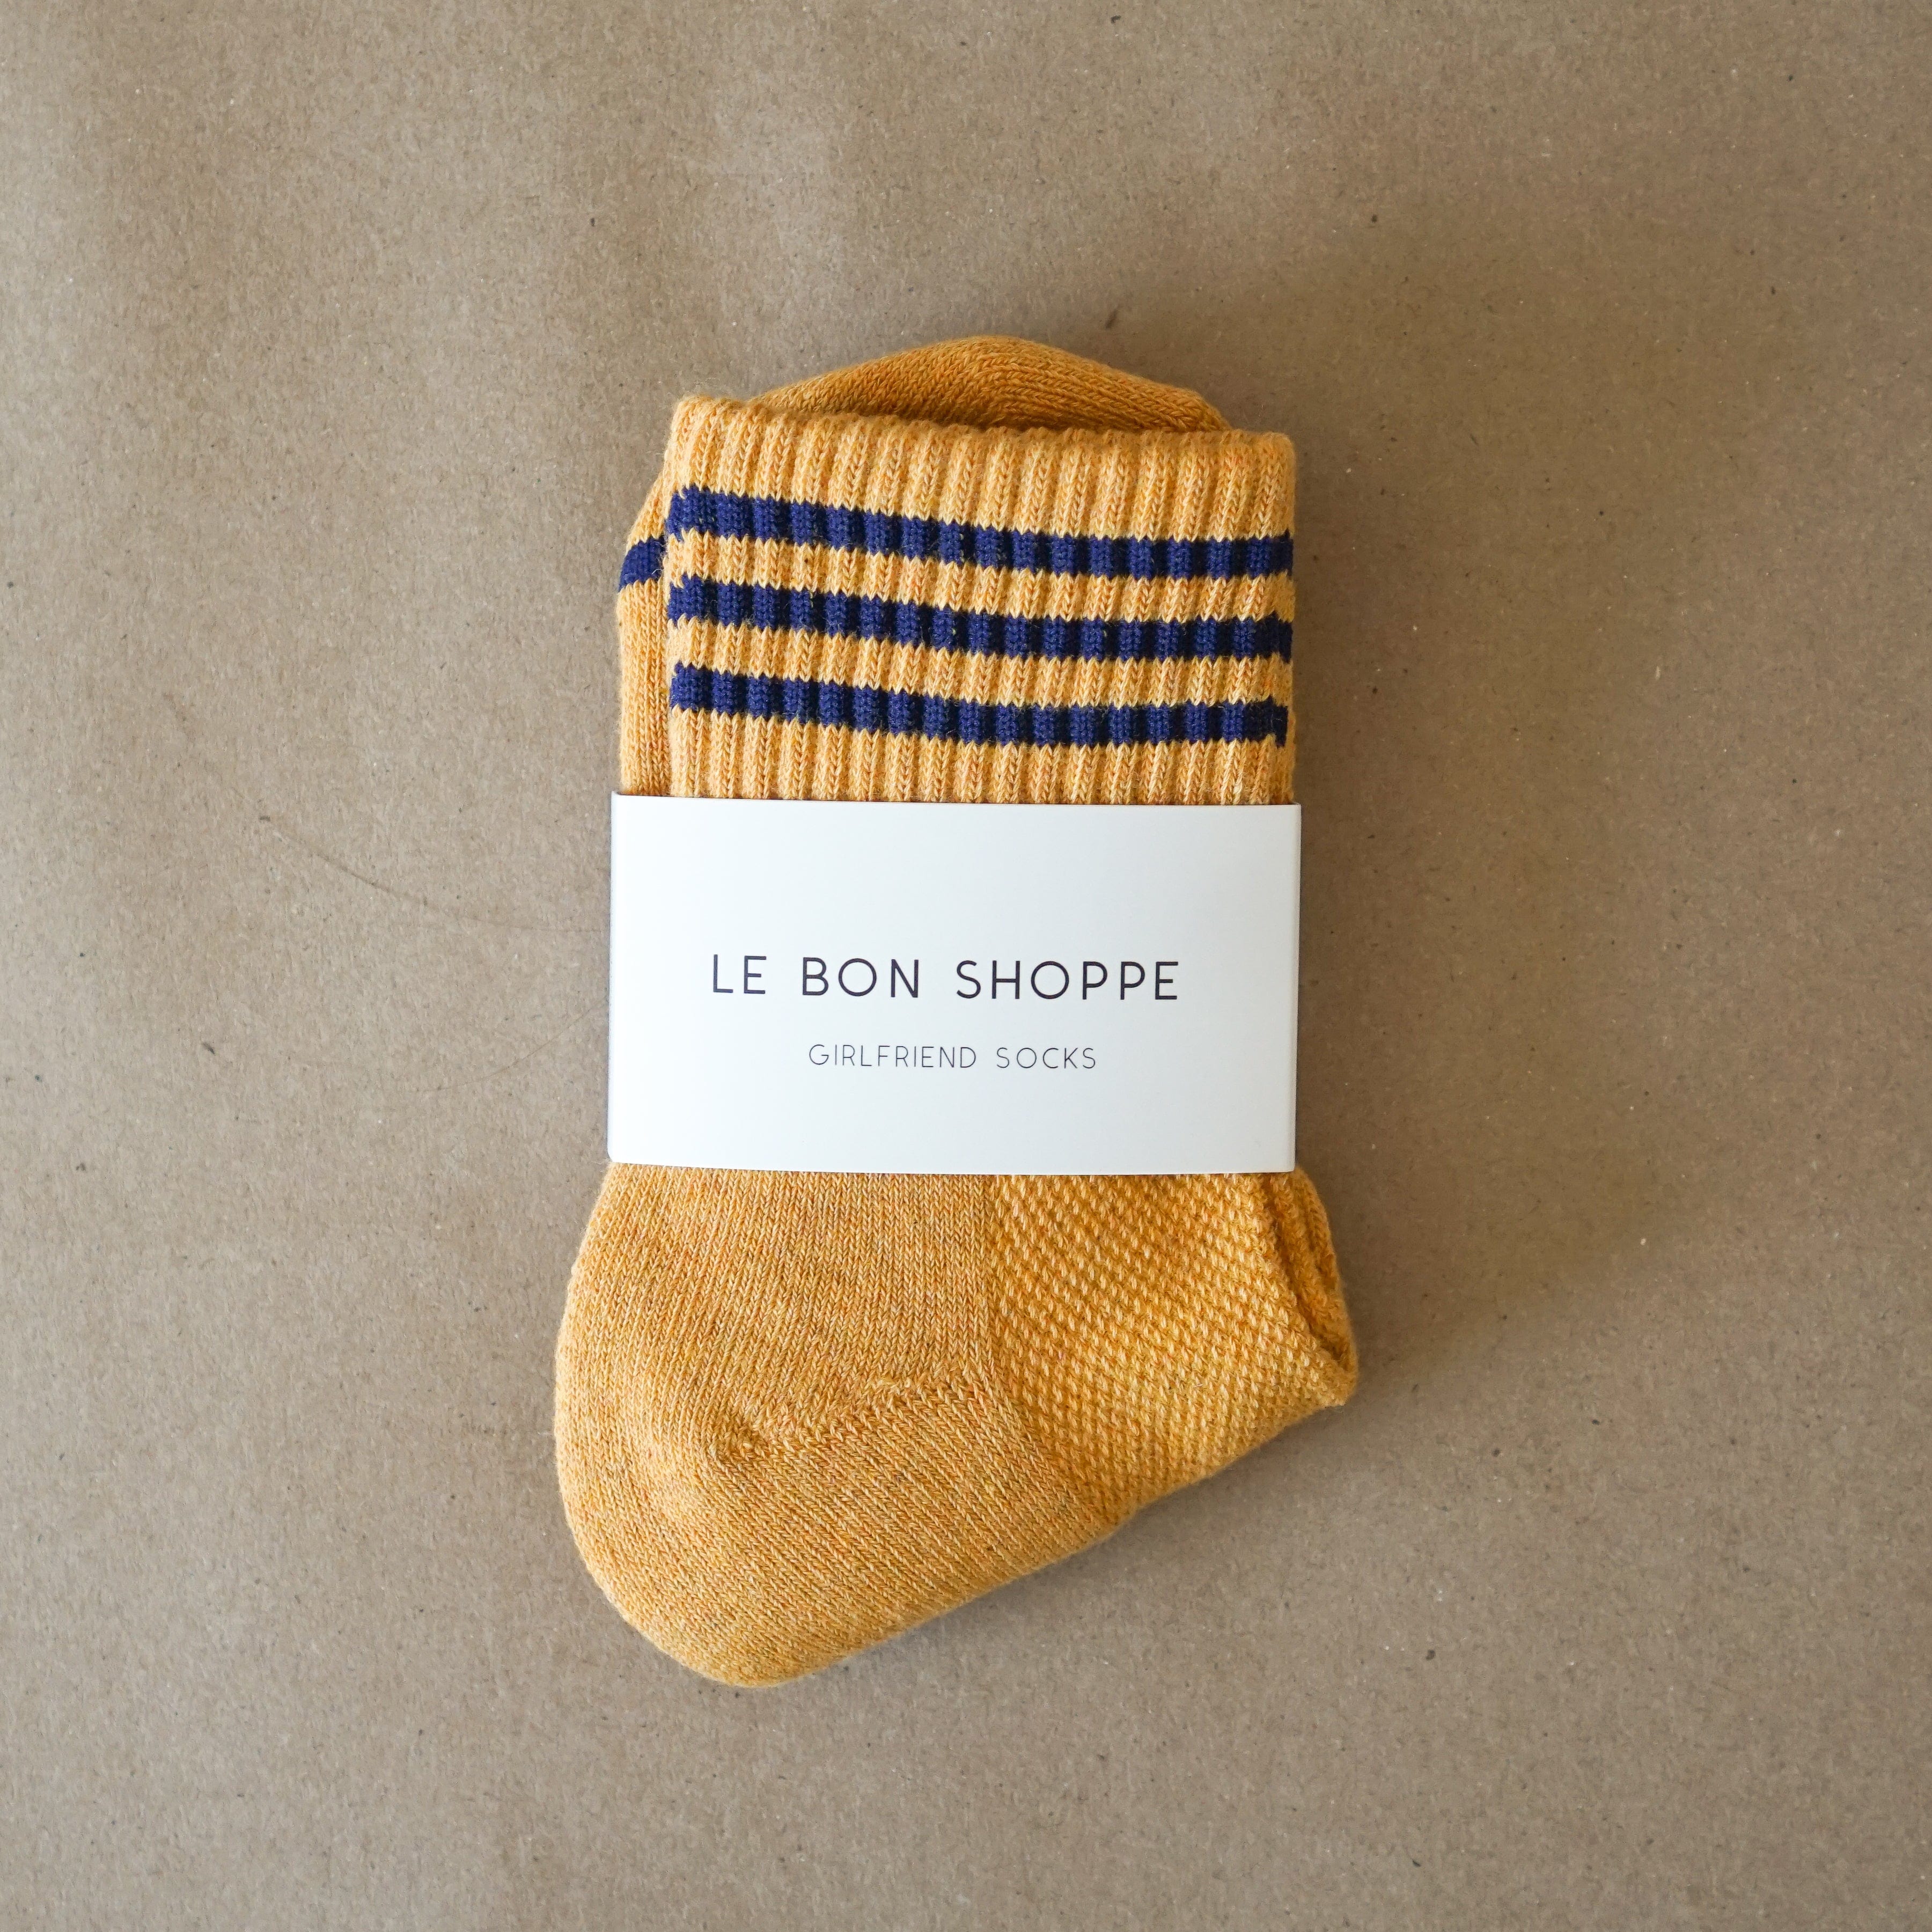 Le Bon Shoppe socks Gold Le Bon "Girlfriend" Socks